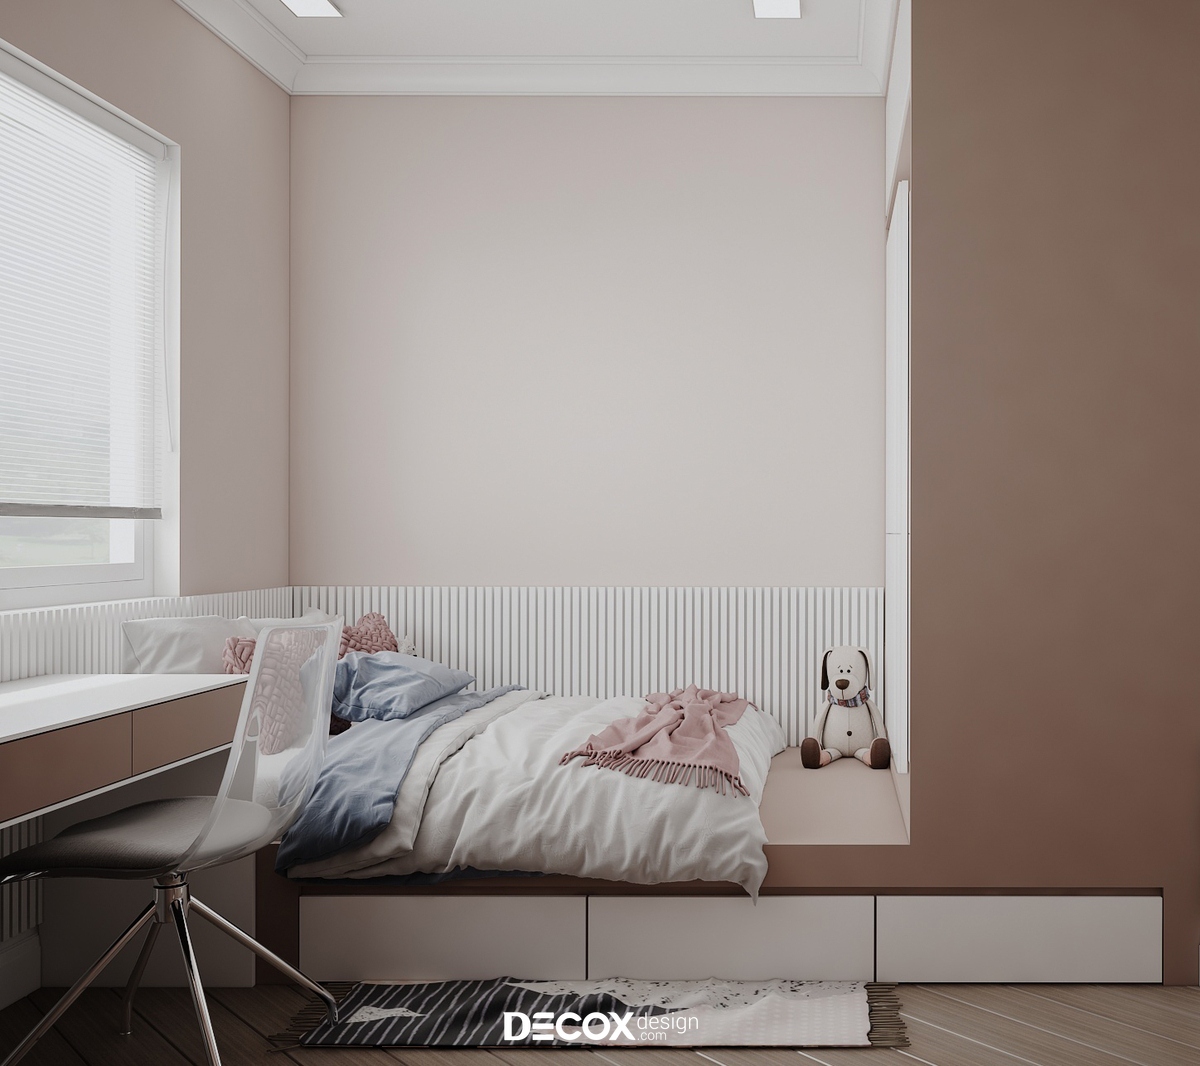 Phòng ngủ với tông màu hồng cuốn hút, mang cảm giác tươi sáng